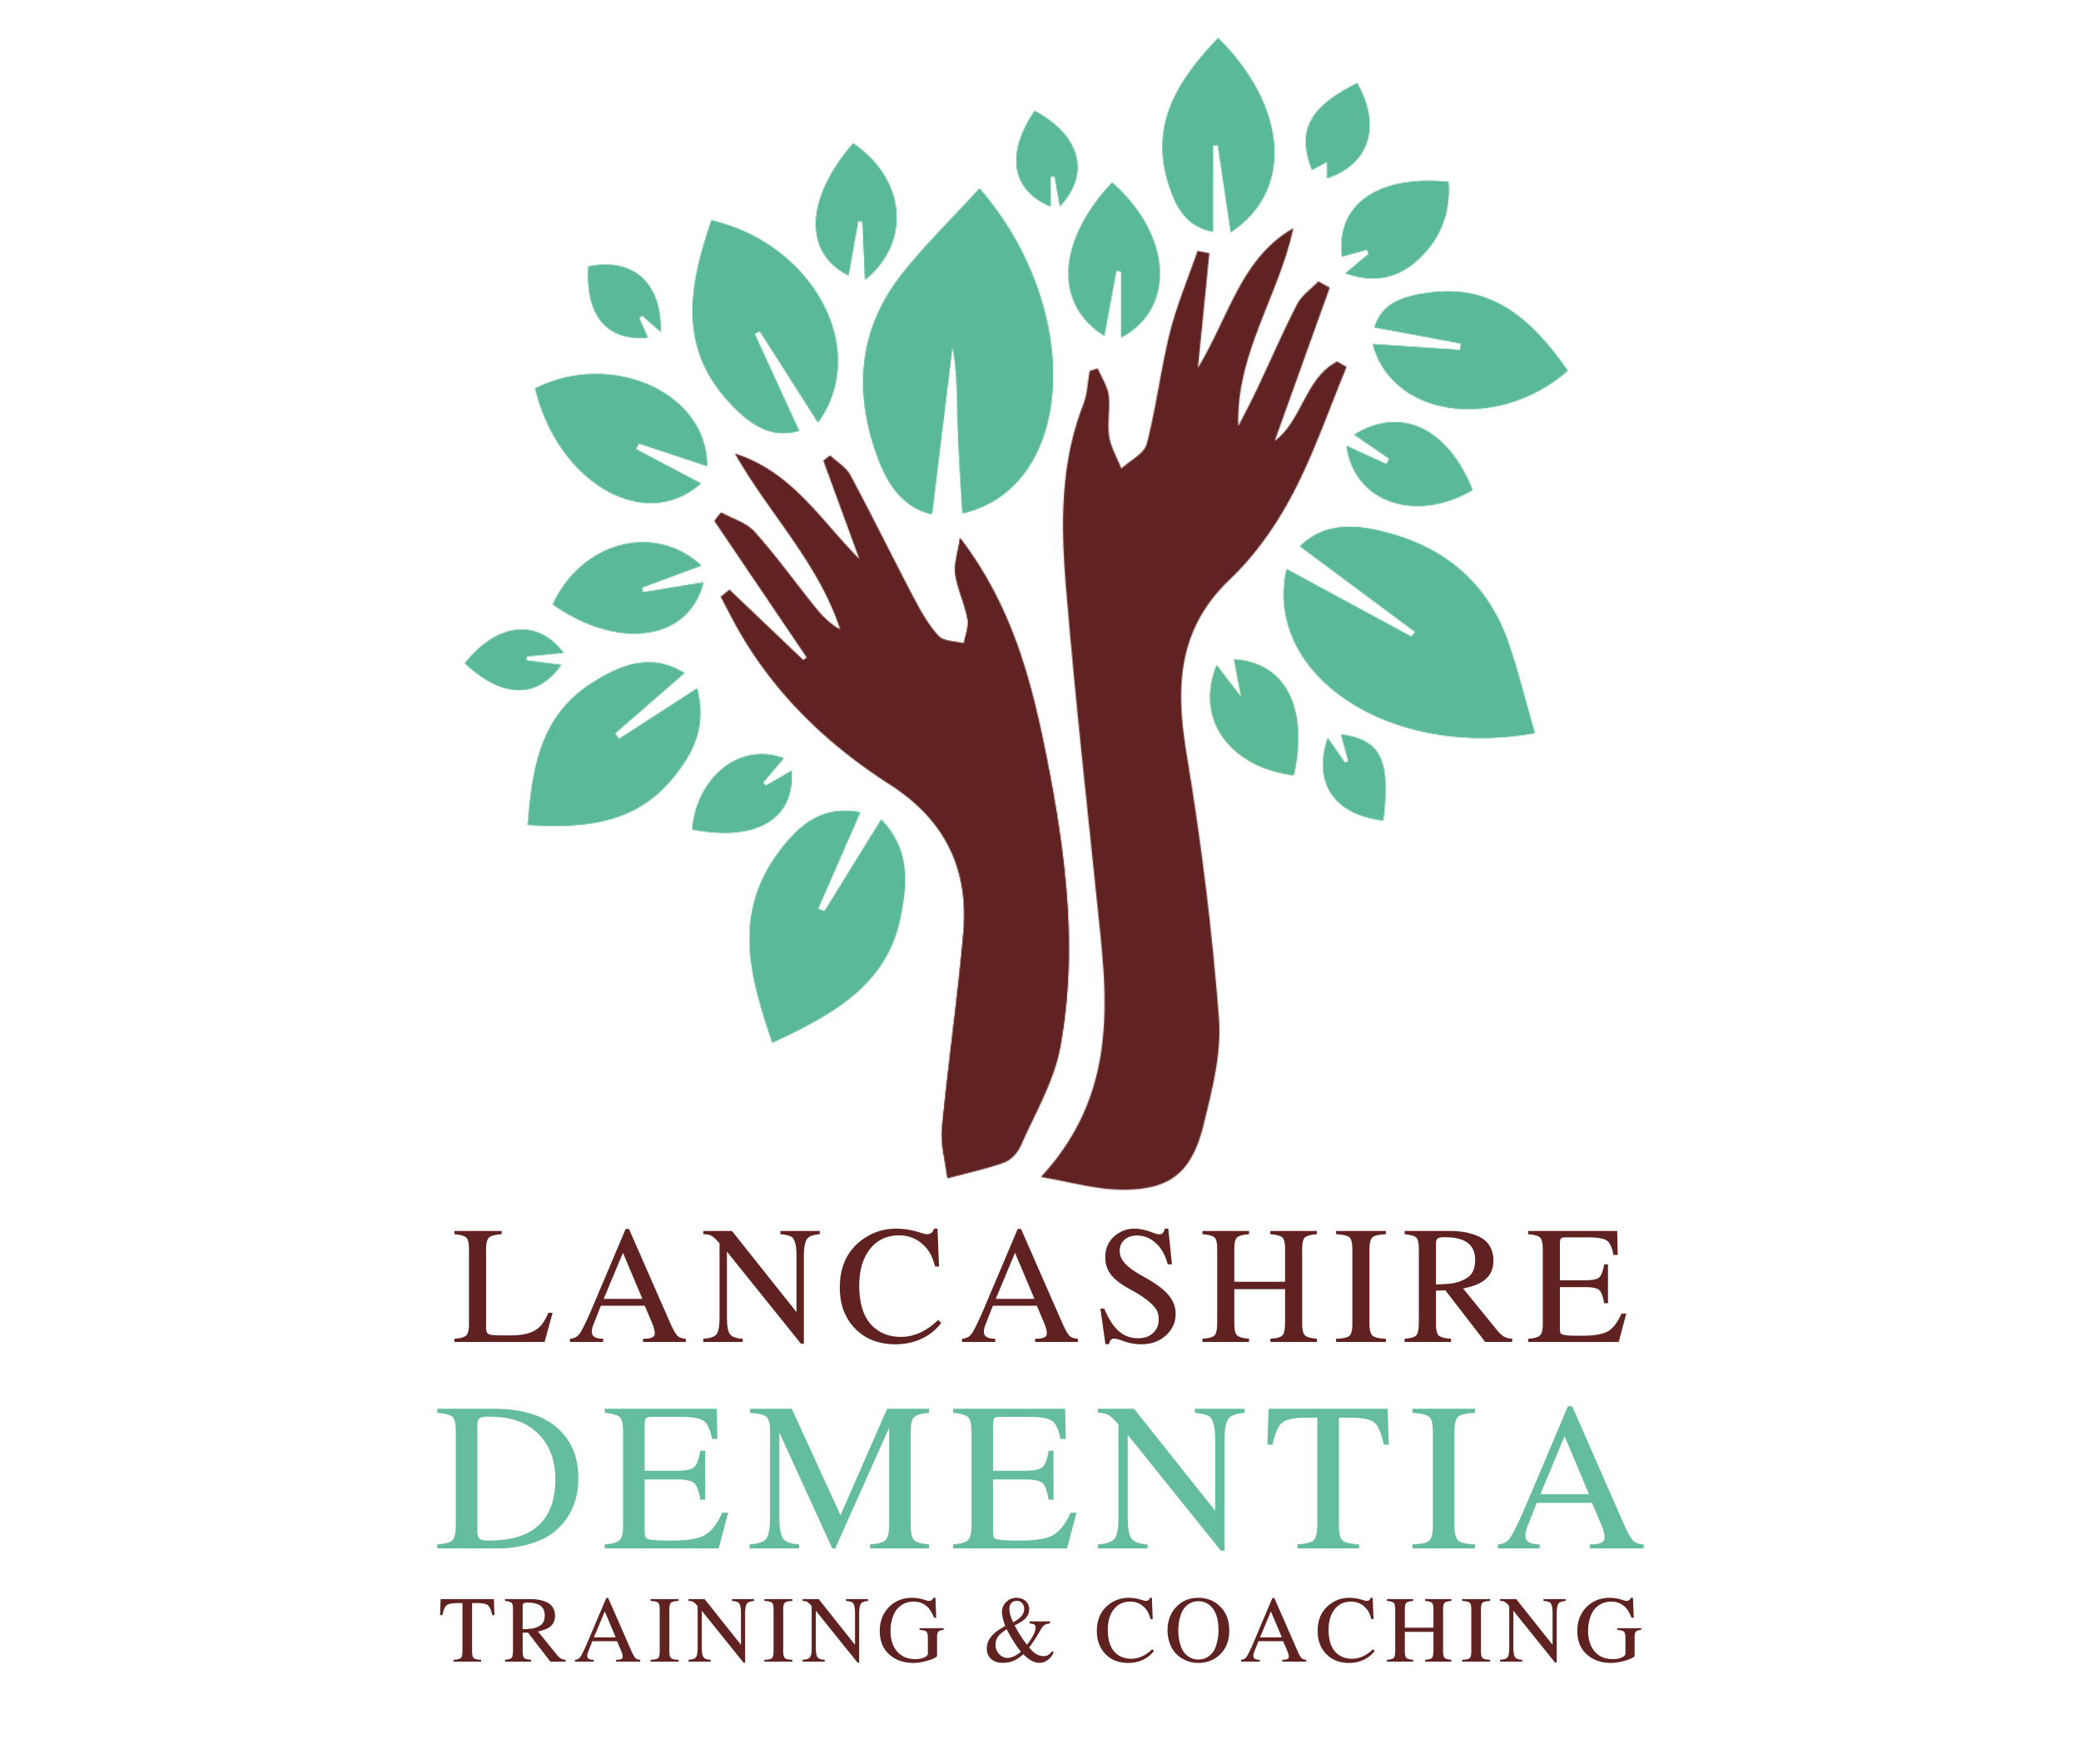 Lancashire Dementia